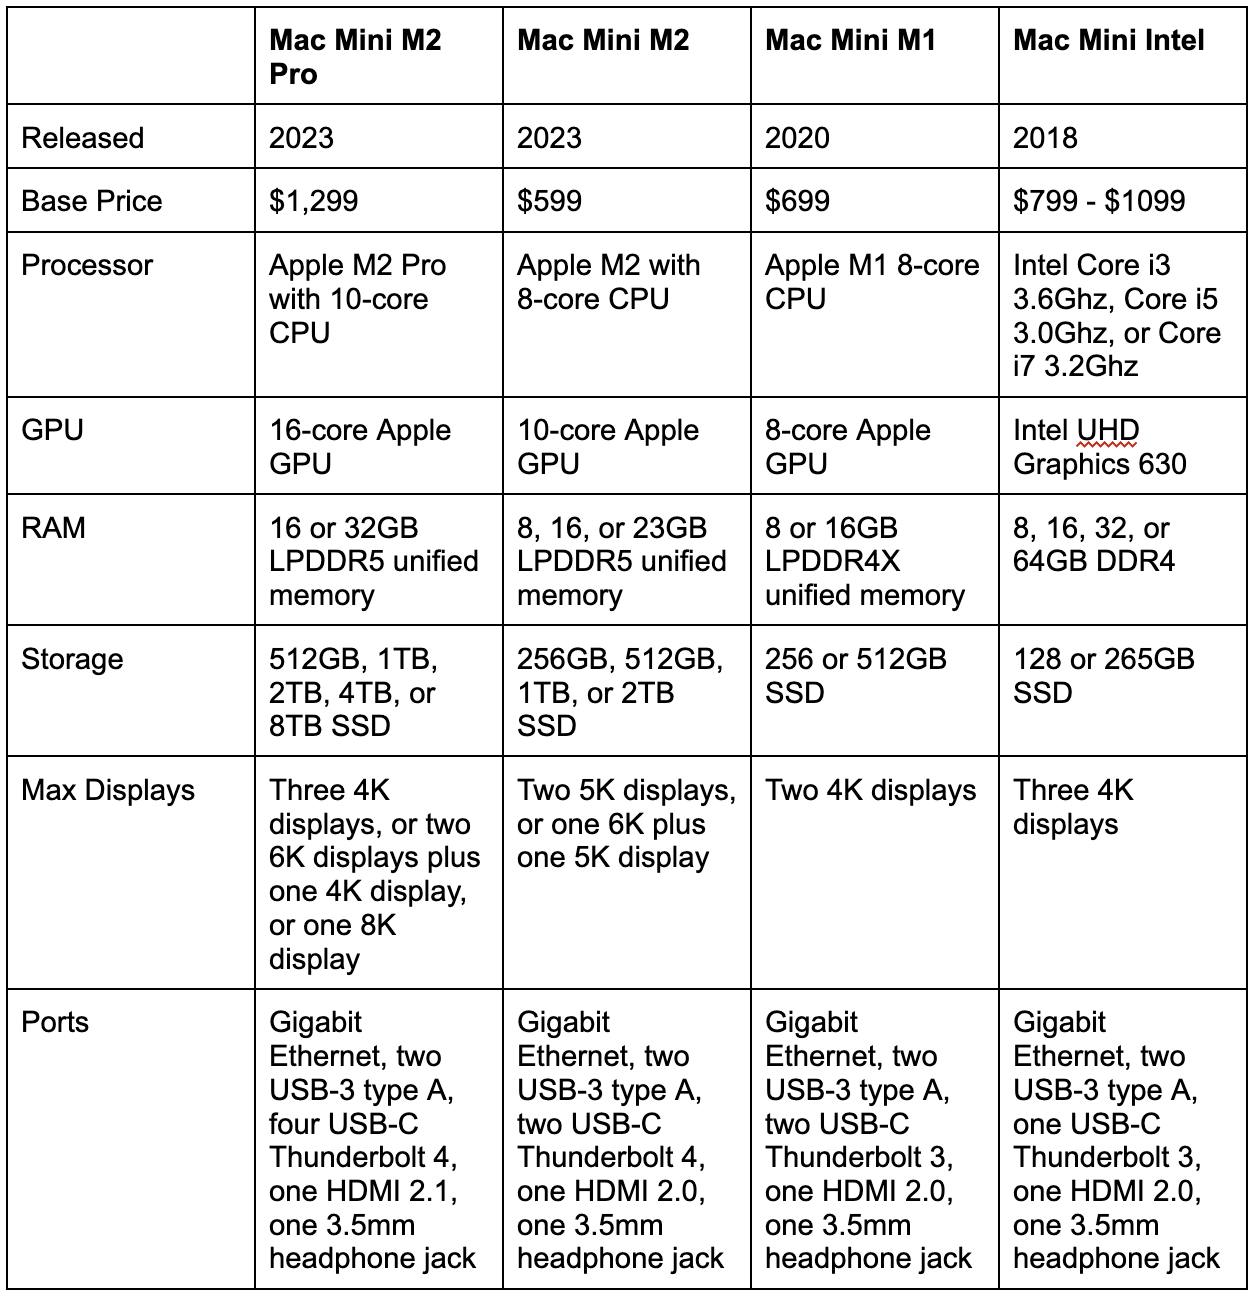 Mac Mini M2 Pro, M2, M1, and Mac Mini Intel 2018 specs compared